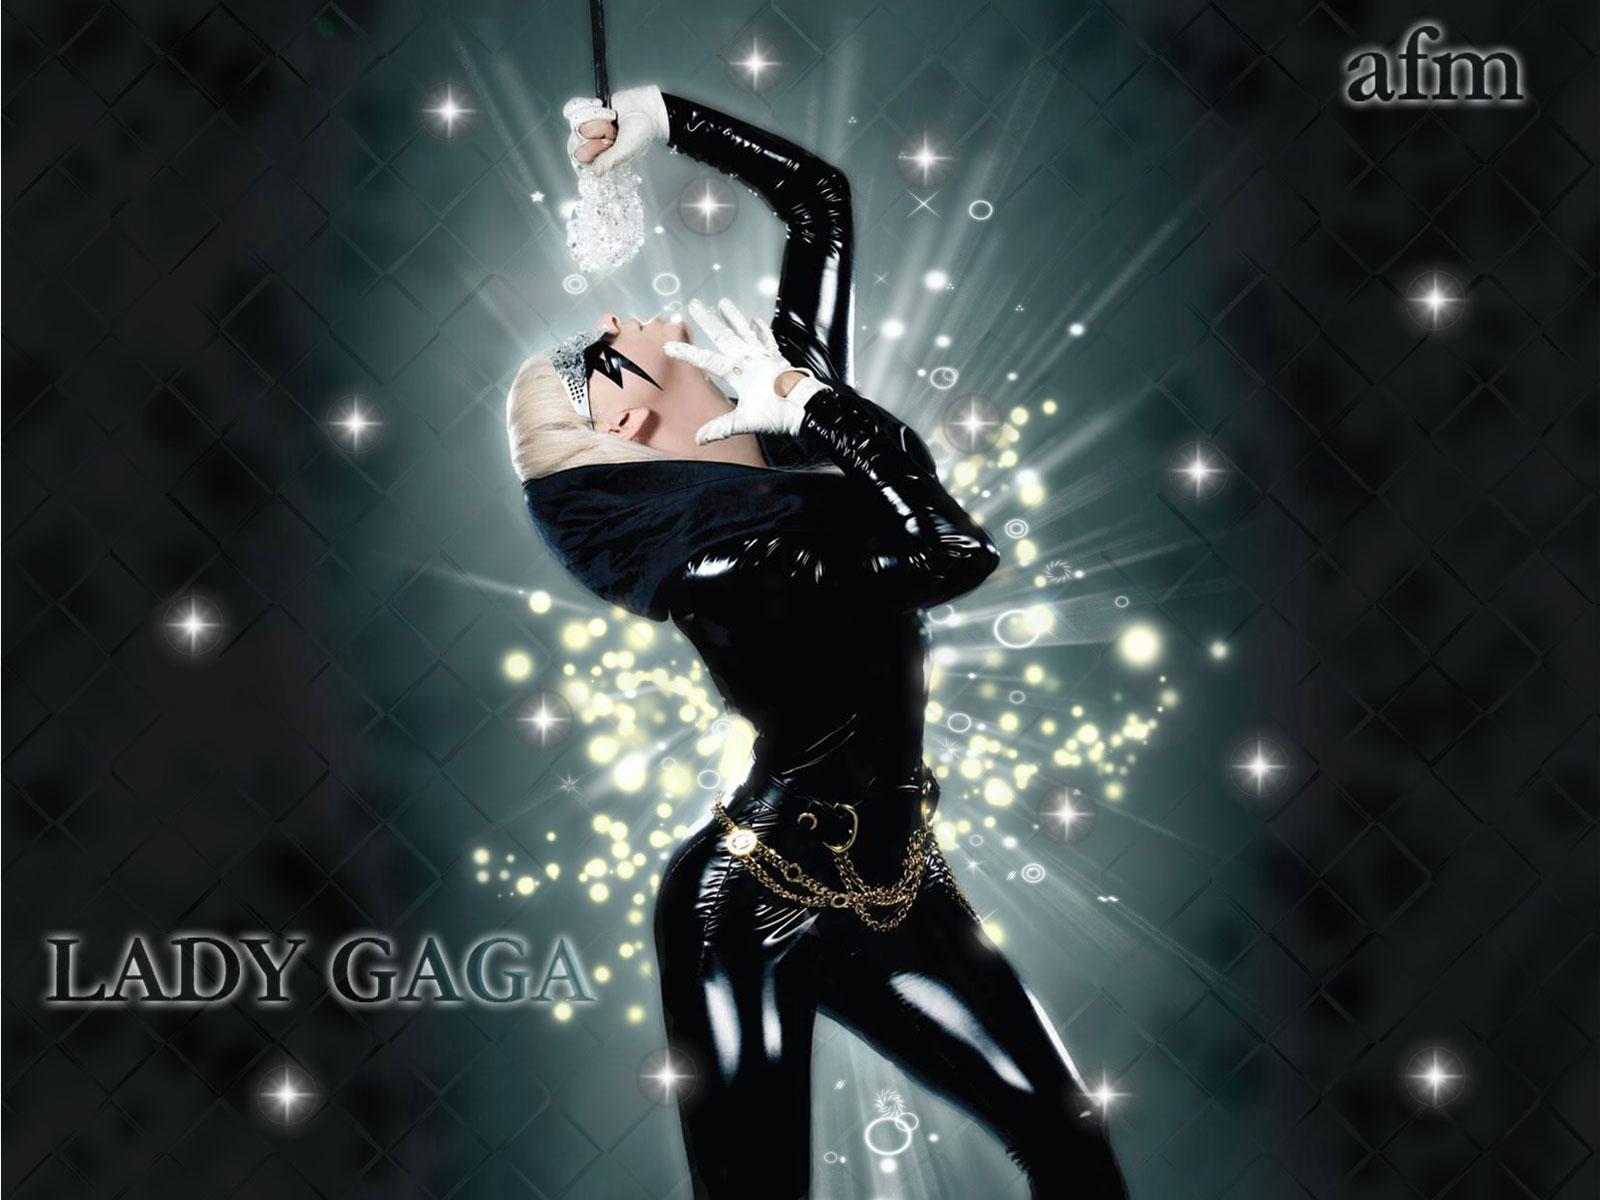 http://4.bp.blogspot.com/-9bSD7mq-8O8/UQKY1IzManI/AAAAAAAAFEs/1QEZ73vXJfI/s1600/Lady-Gaga-JustDance-1600x1200-Wallpaper.jpg